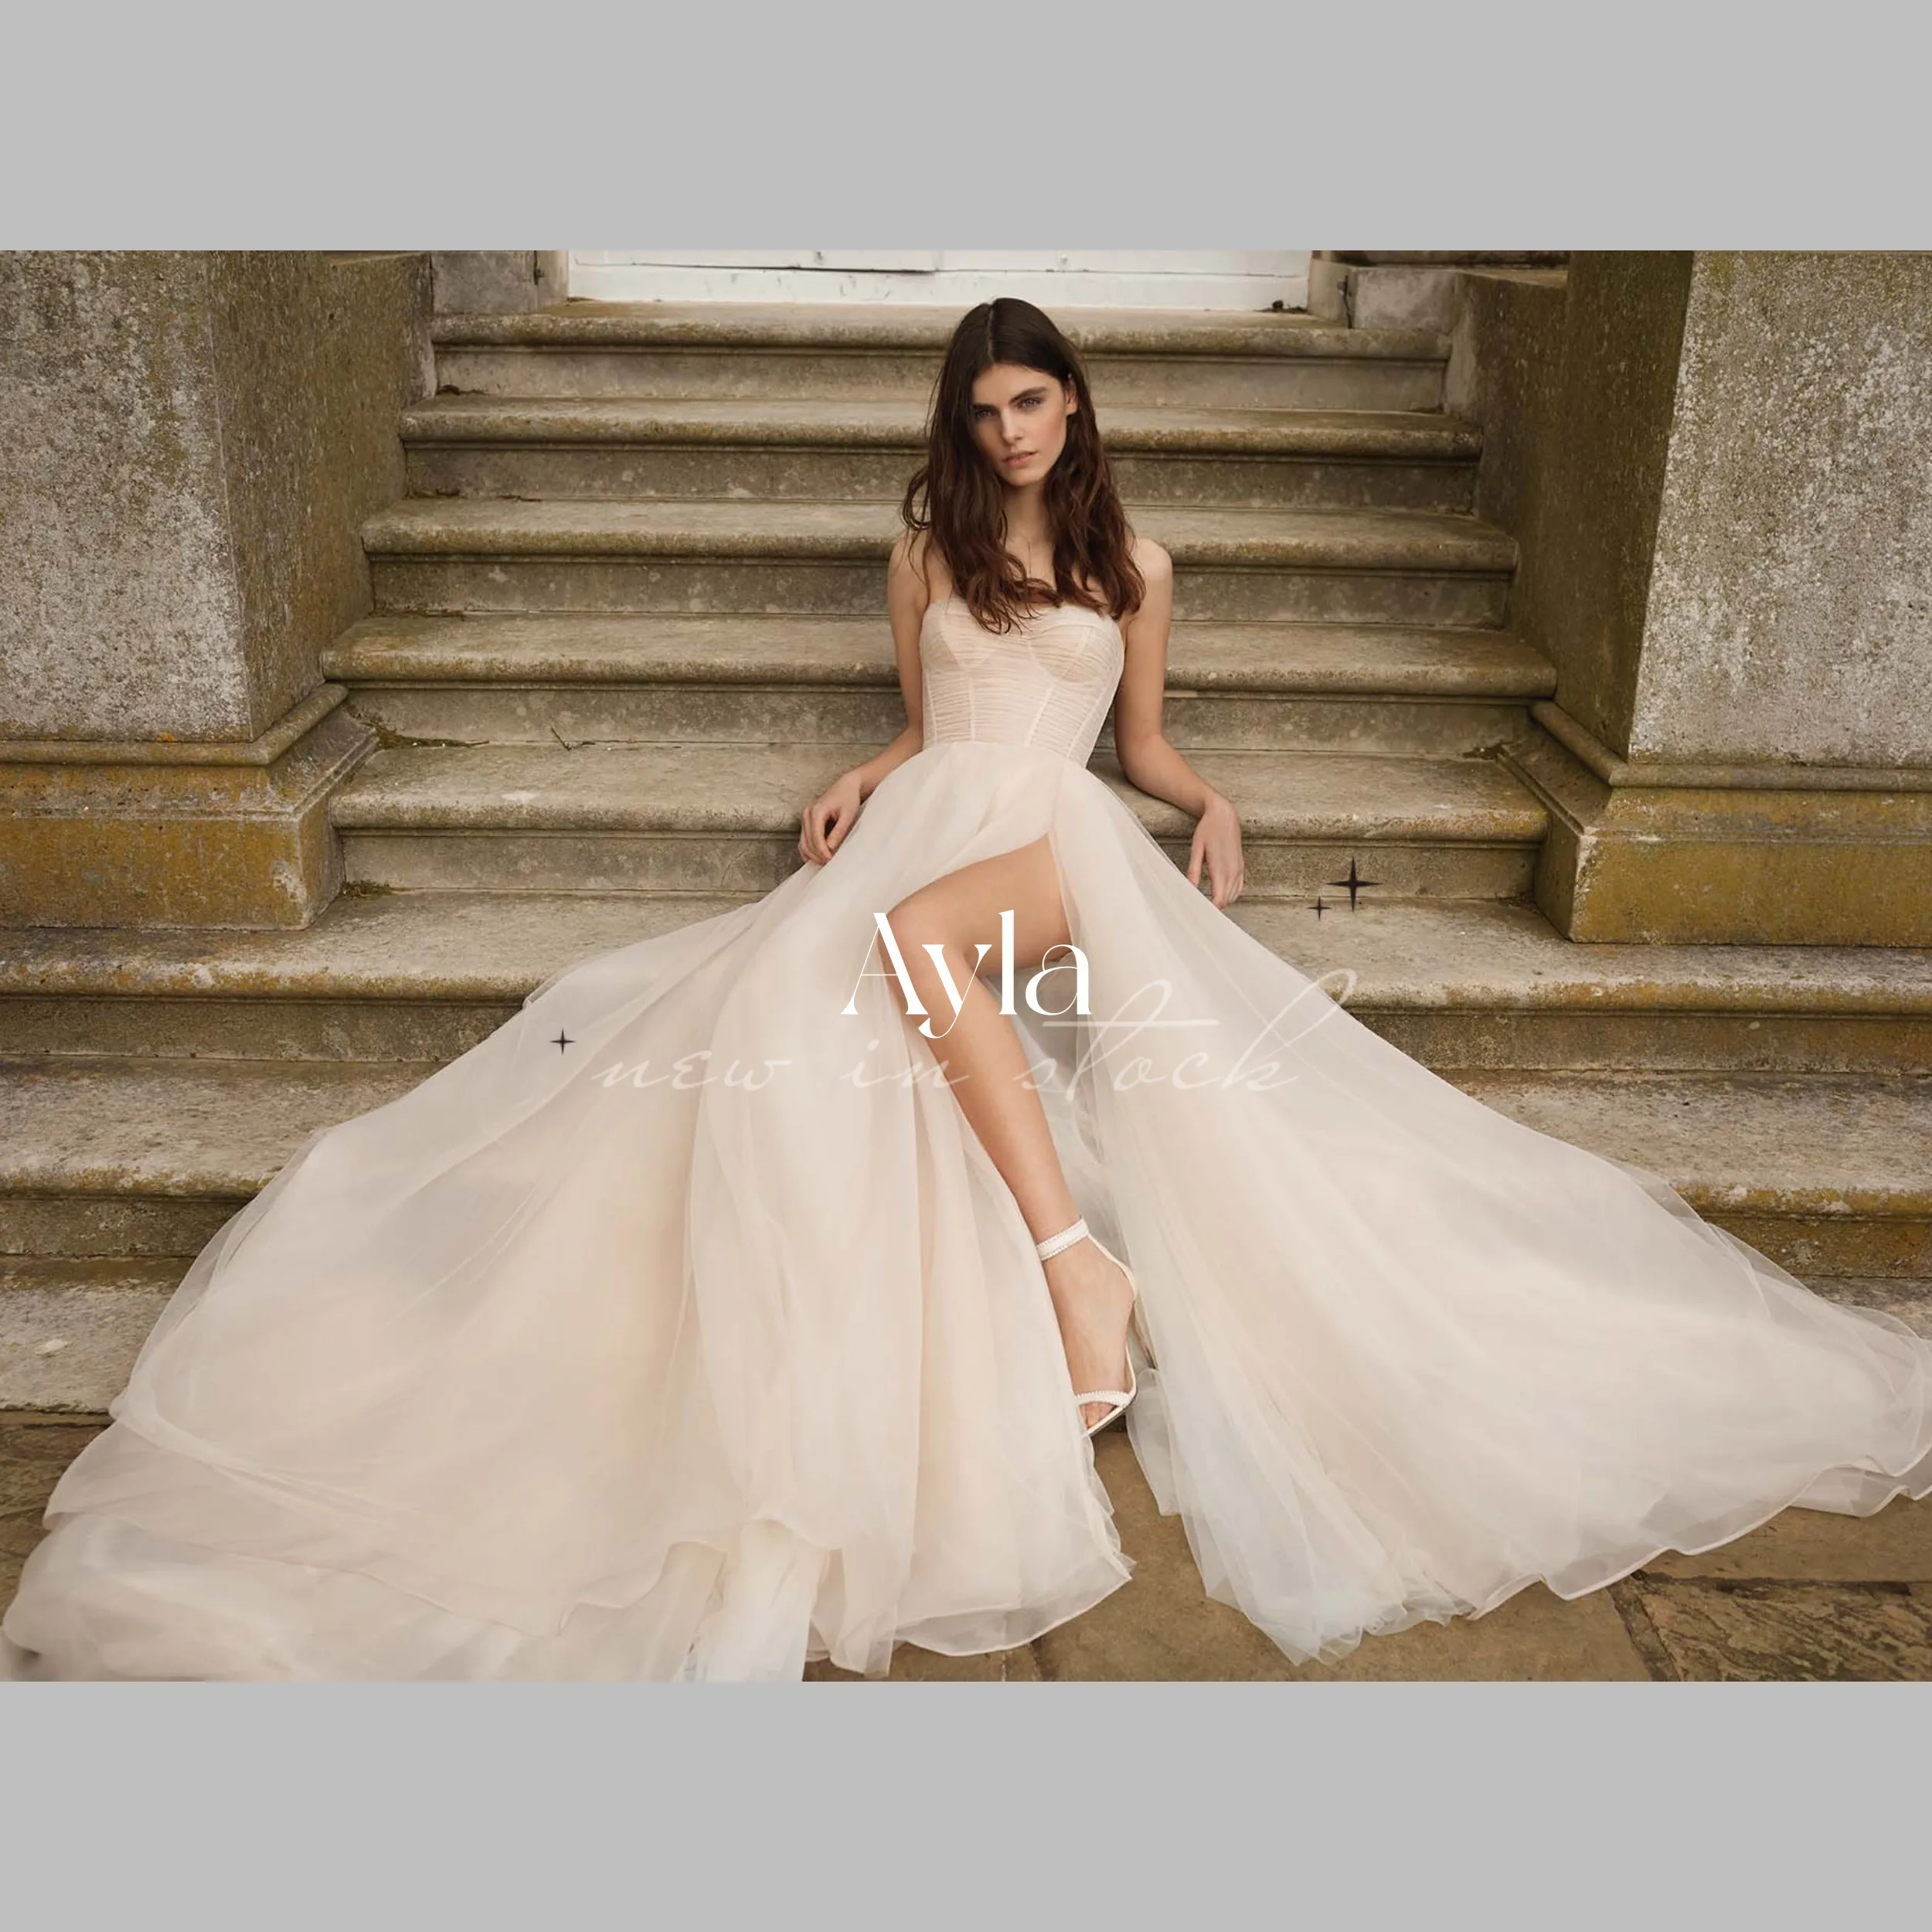 

Grace Glitter Strapless A-line Wedding Gowns Modest High Split Ball Gown Tulle Train Wedding Dress Vestido de Noiva